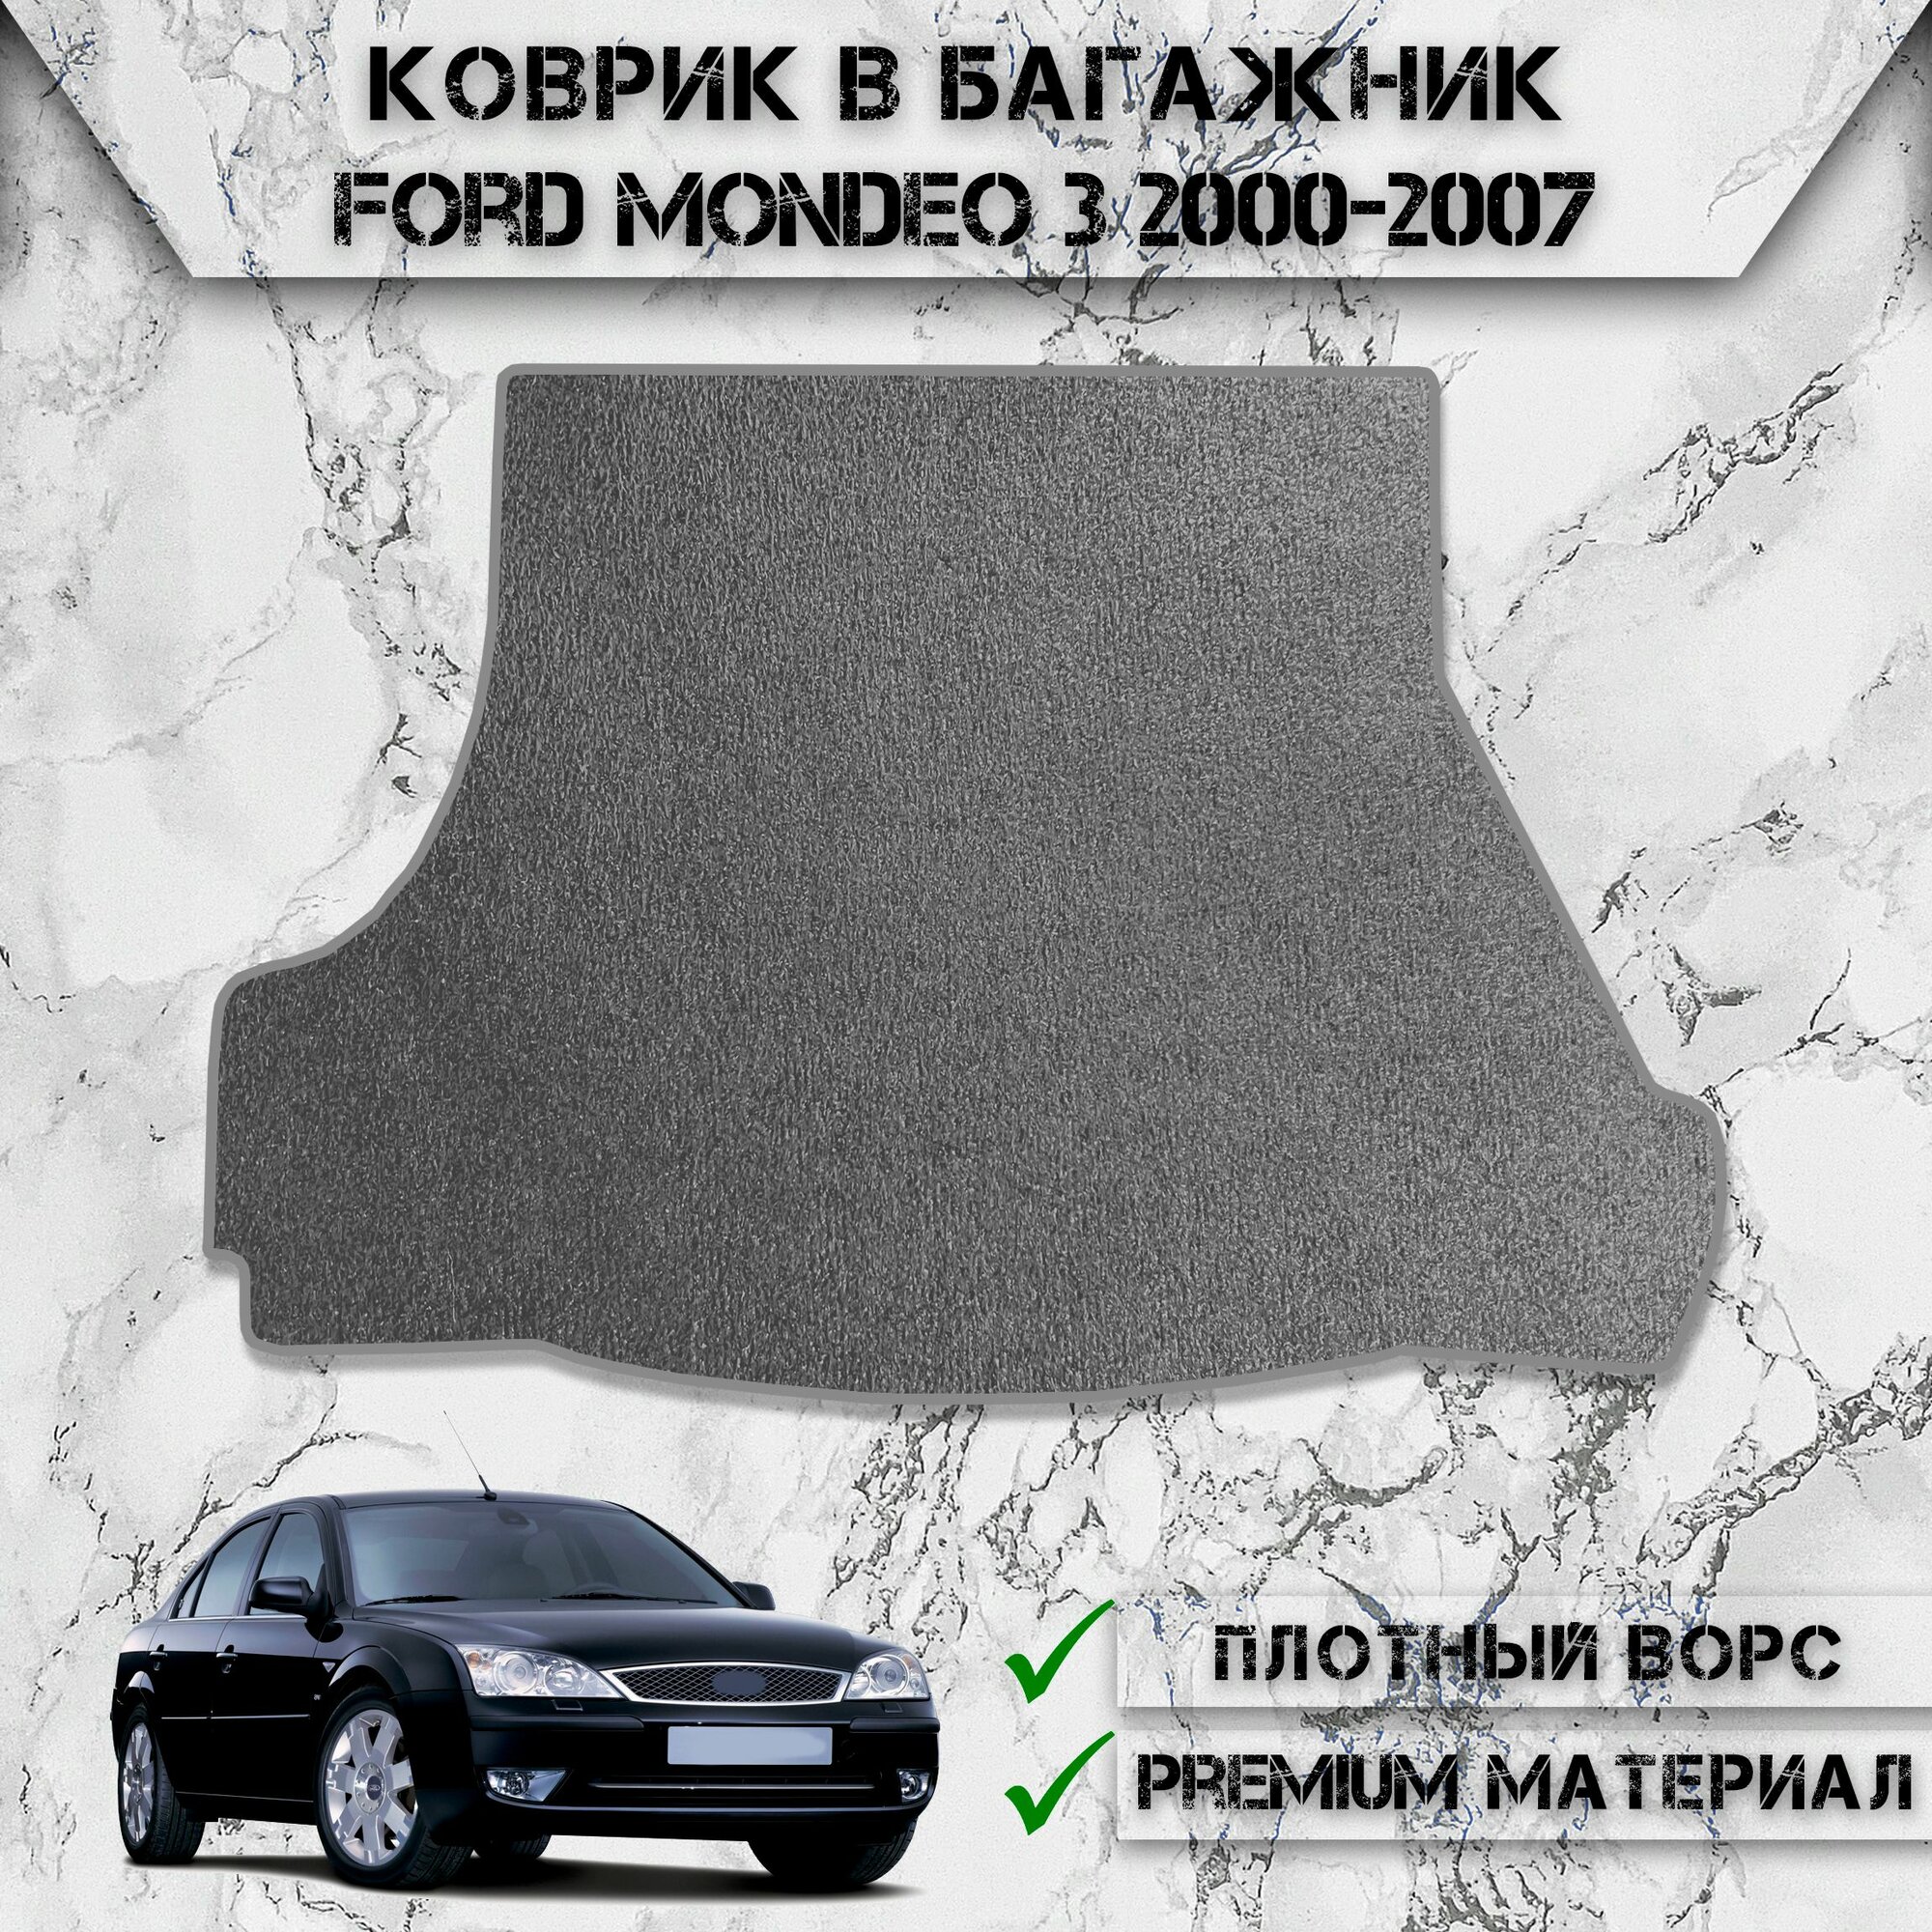 Ворсовый коврик в багажник для авто Форд Мондео / Ford Mondeo 3 Седан 2000-2007 Г. В. Серый С Серым Кантом